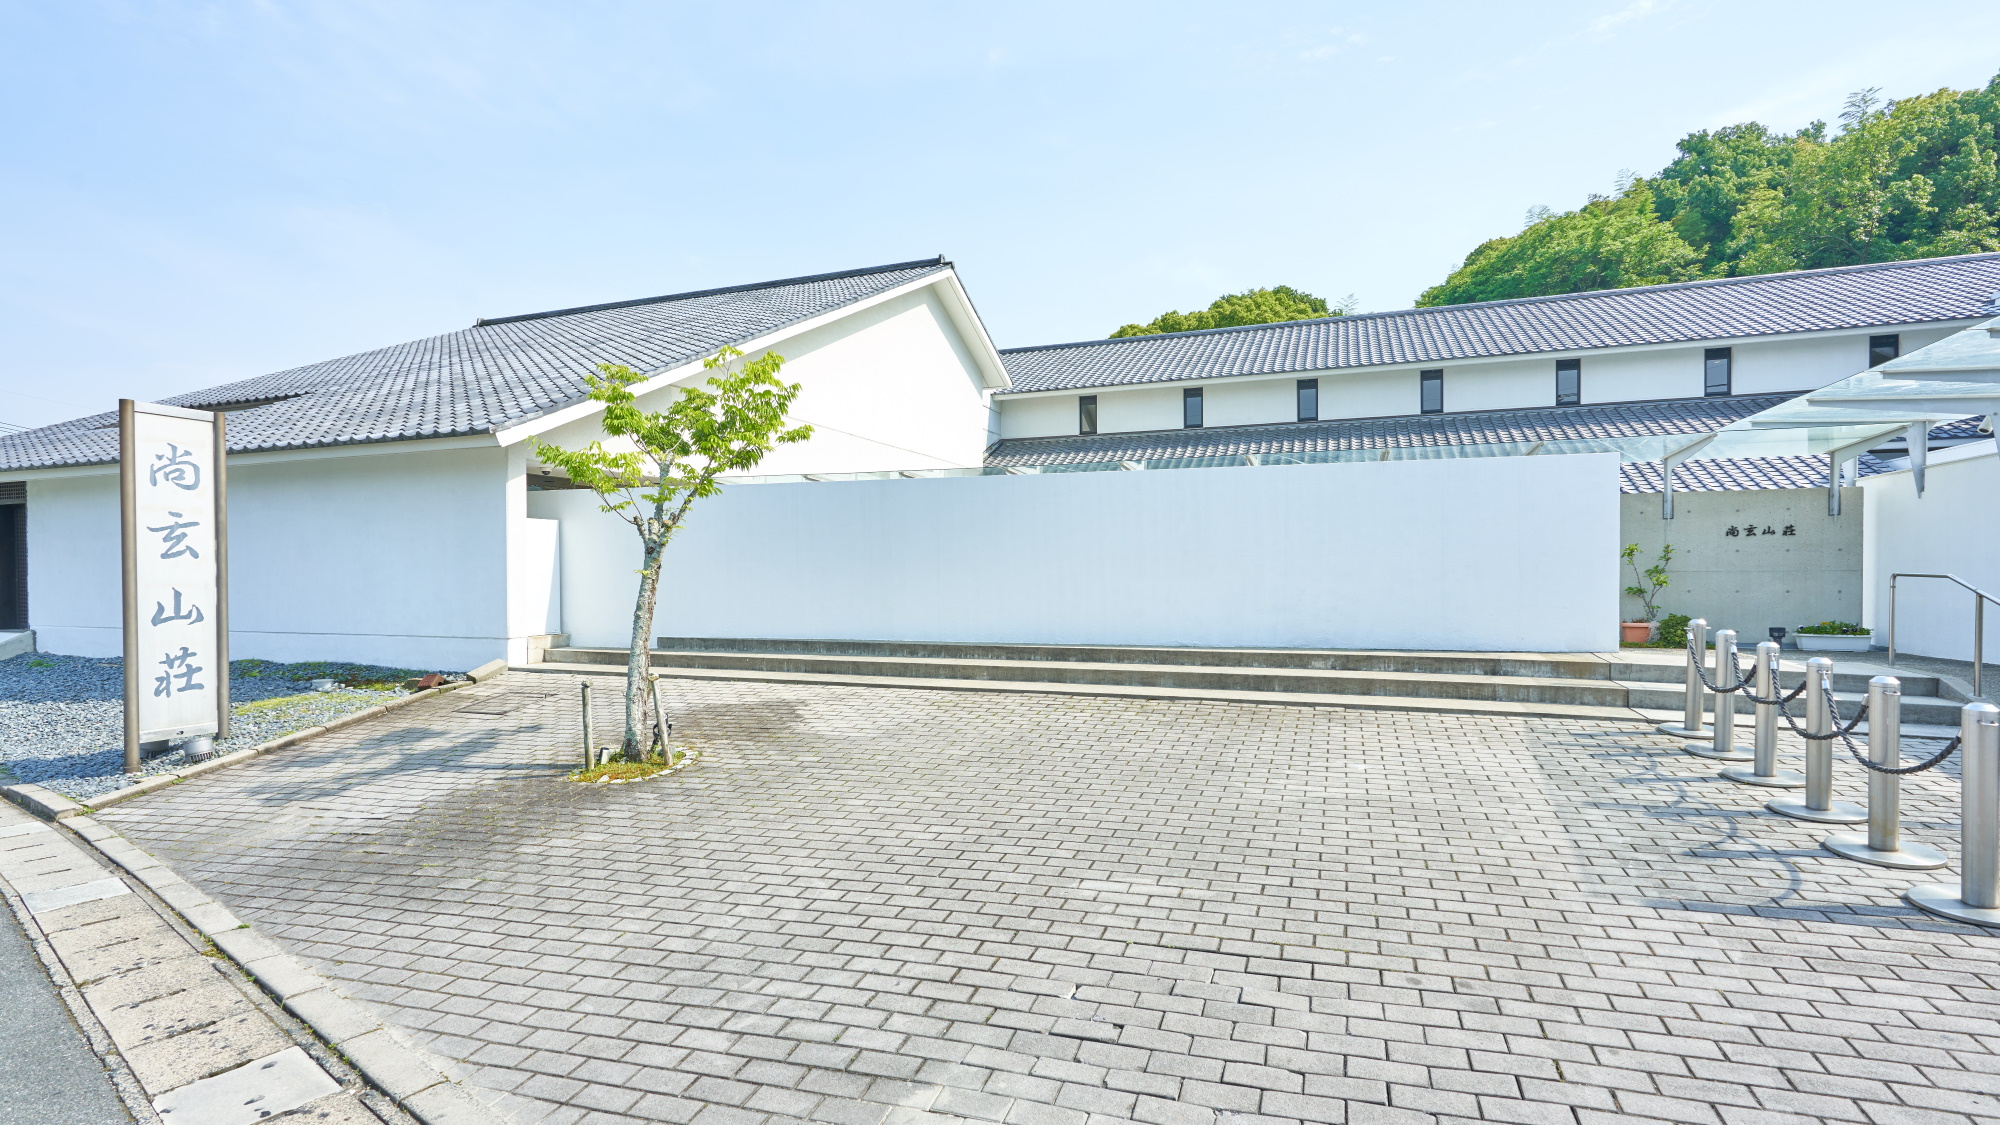 １３５０坪の日本庭園と好対照をなす、美術館の様で、数々の賞に輝いたシャープなモダン和風現代建築。